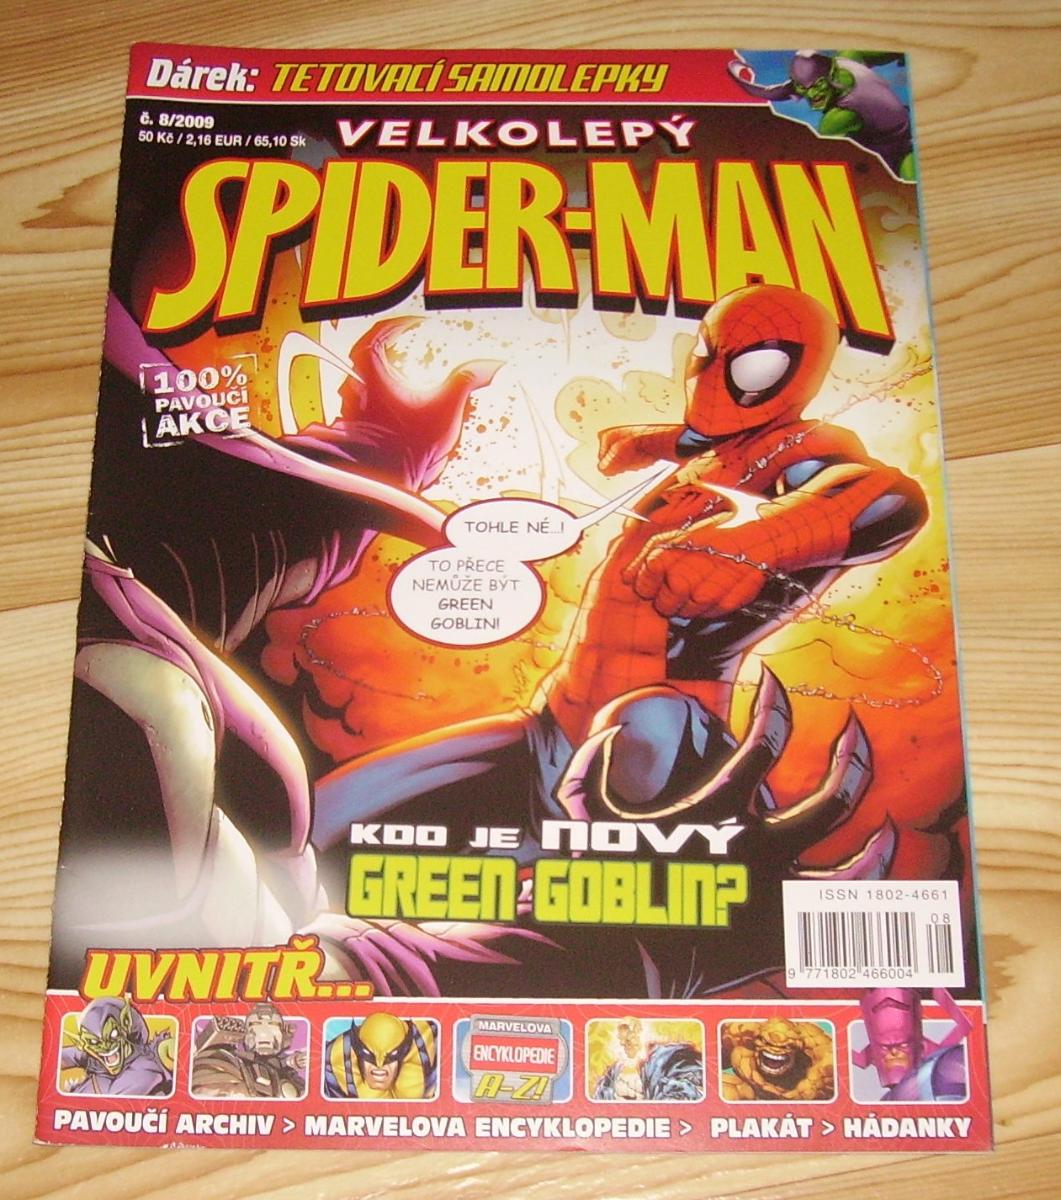 Velkolepý Spider-Man 2009/08